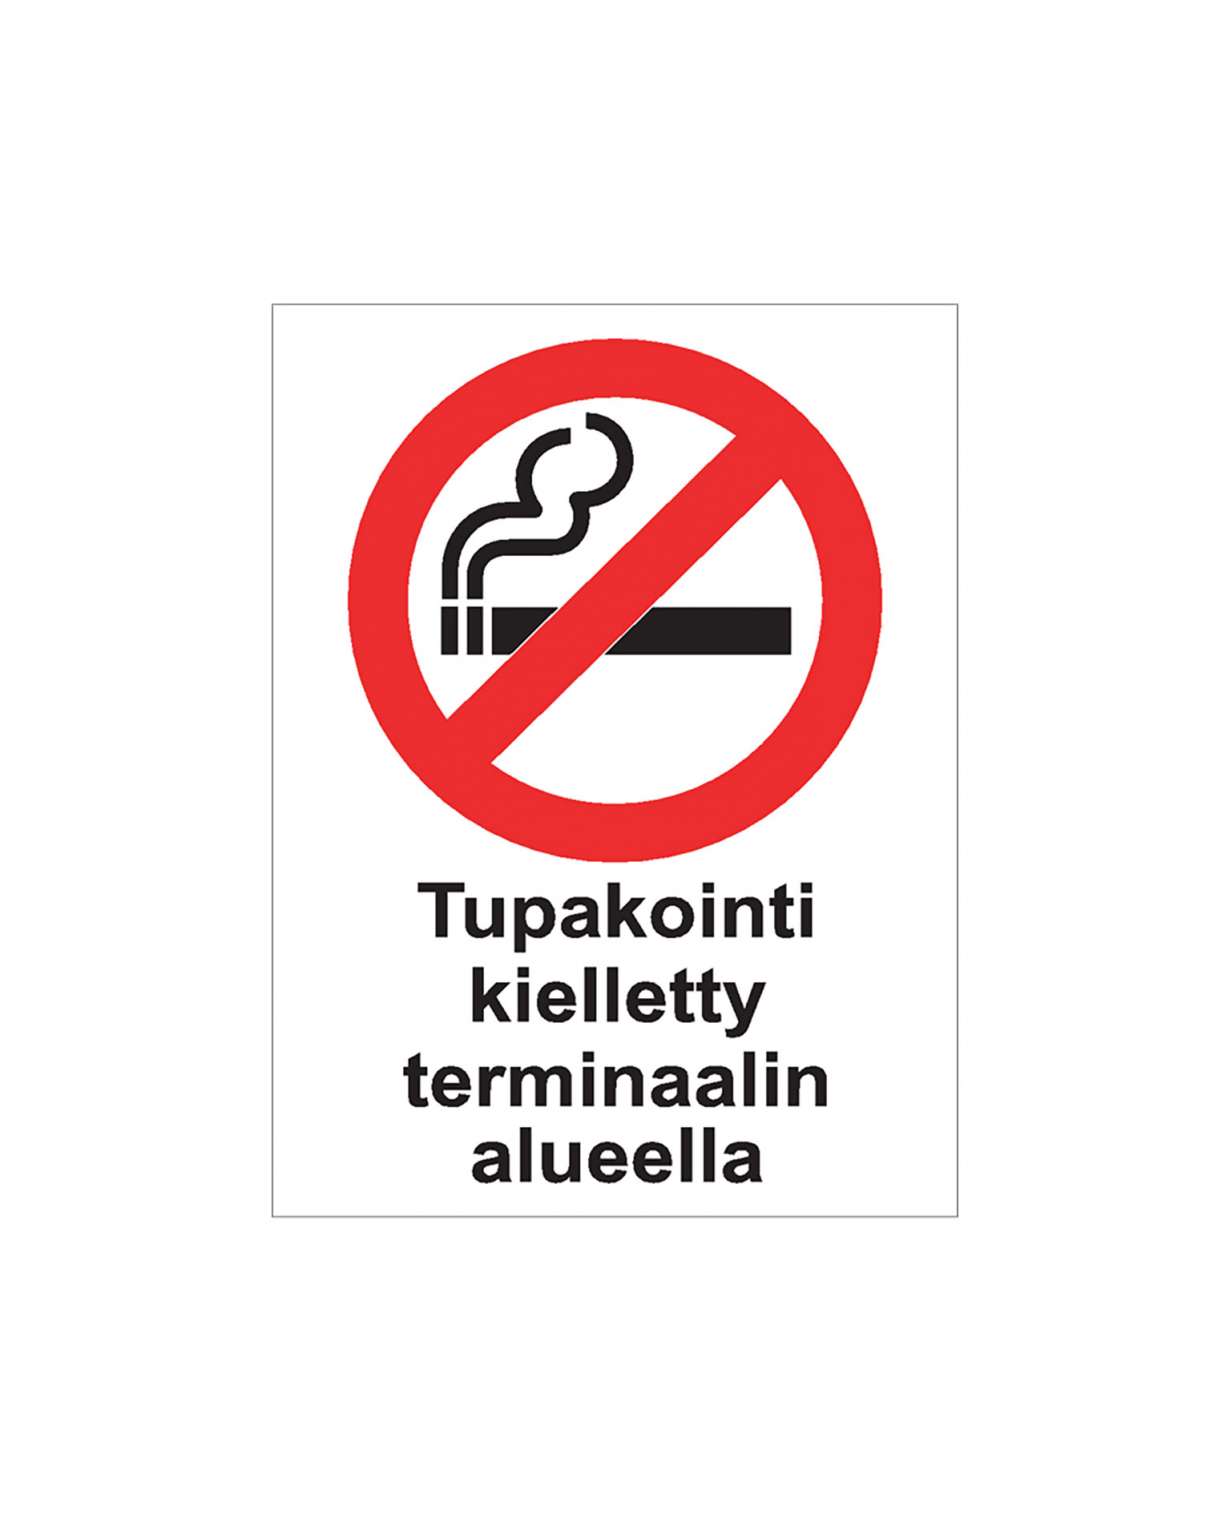 Tupakointi kielletty terminaalin alueella, Ibond alumiini, 200x300 mm